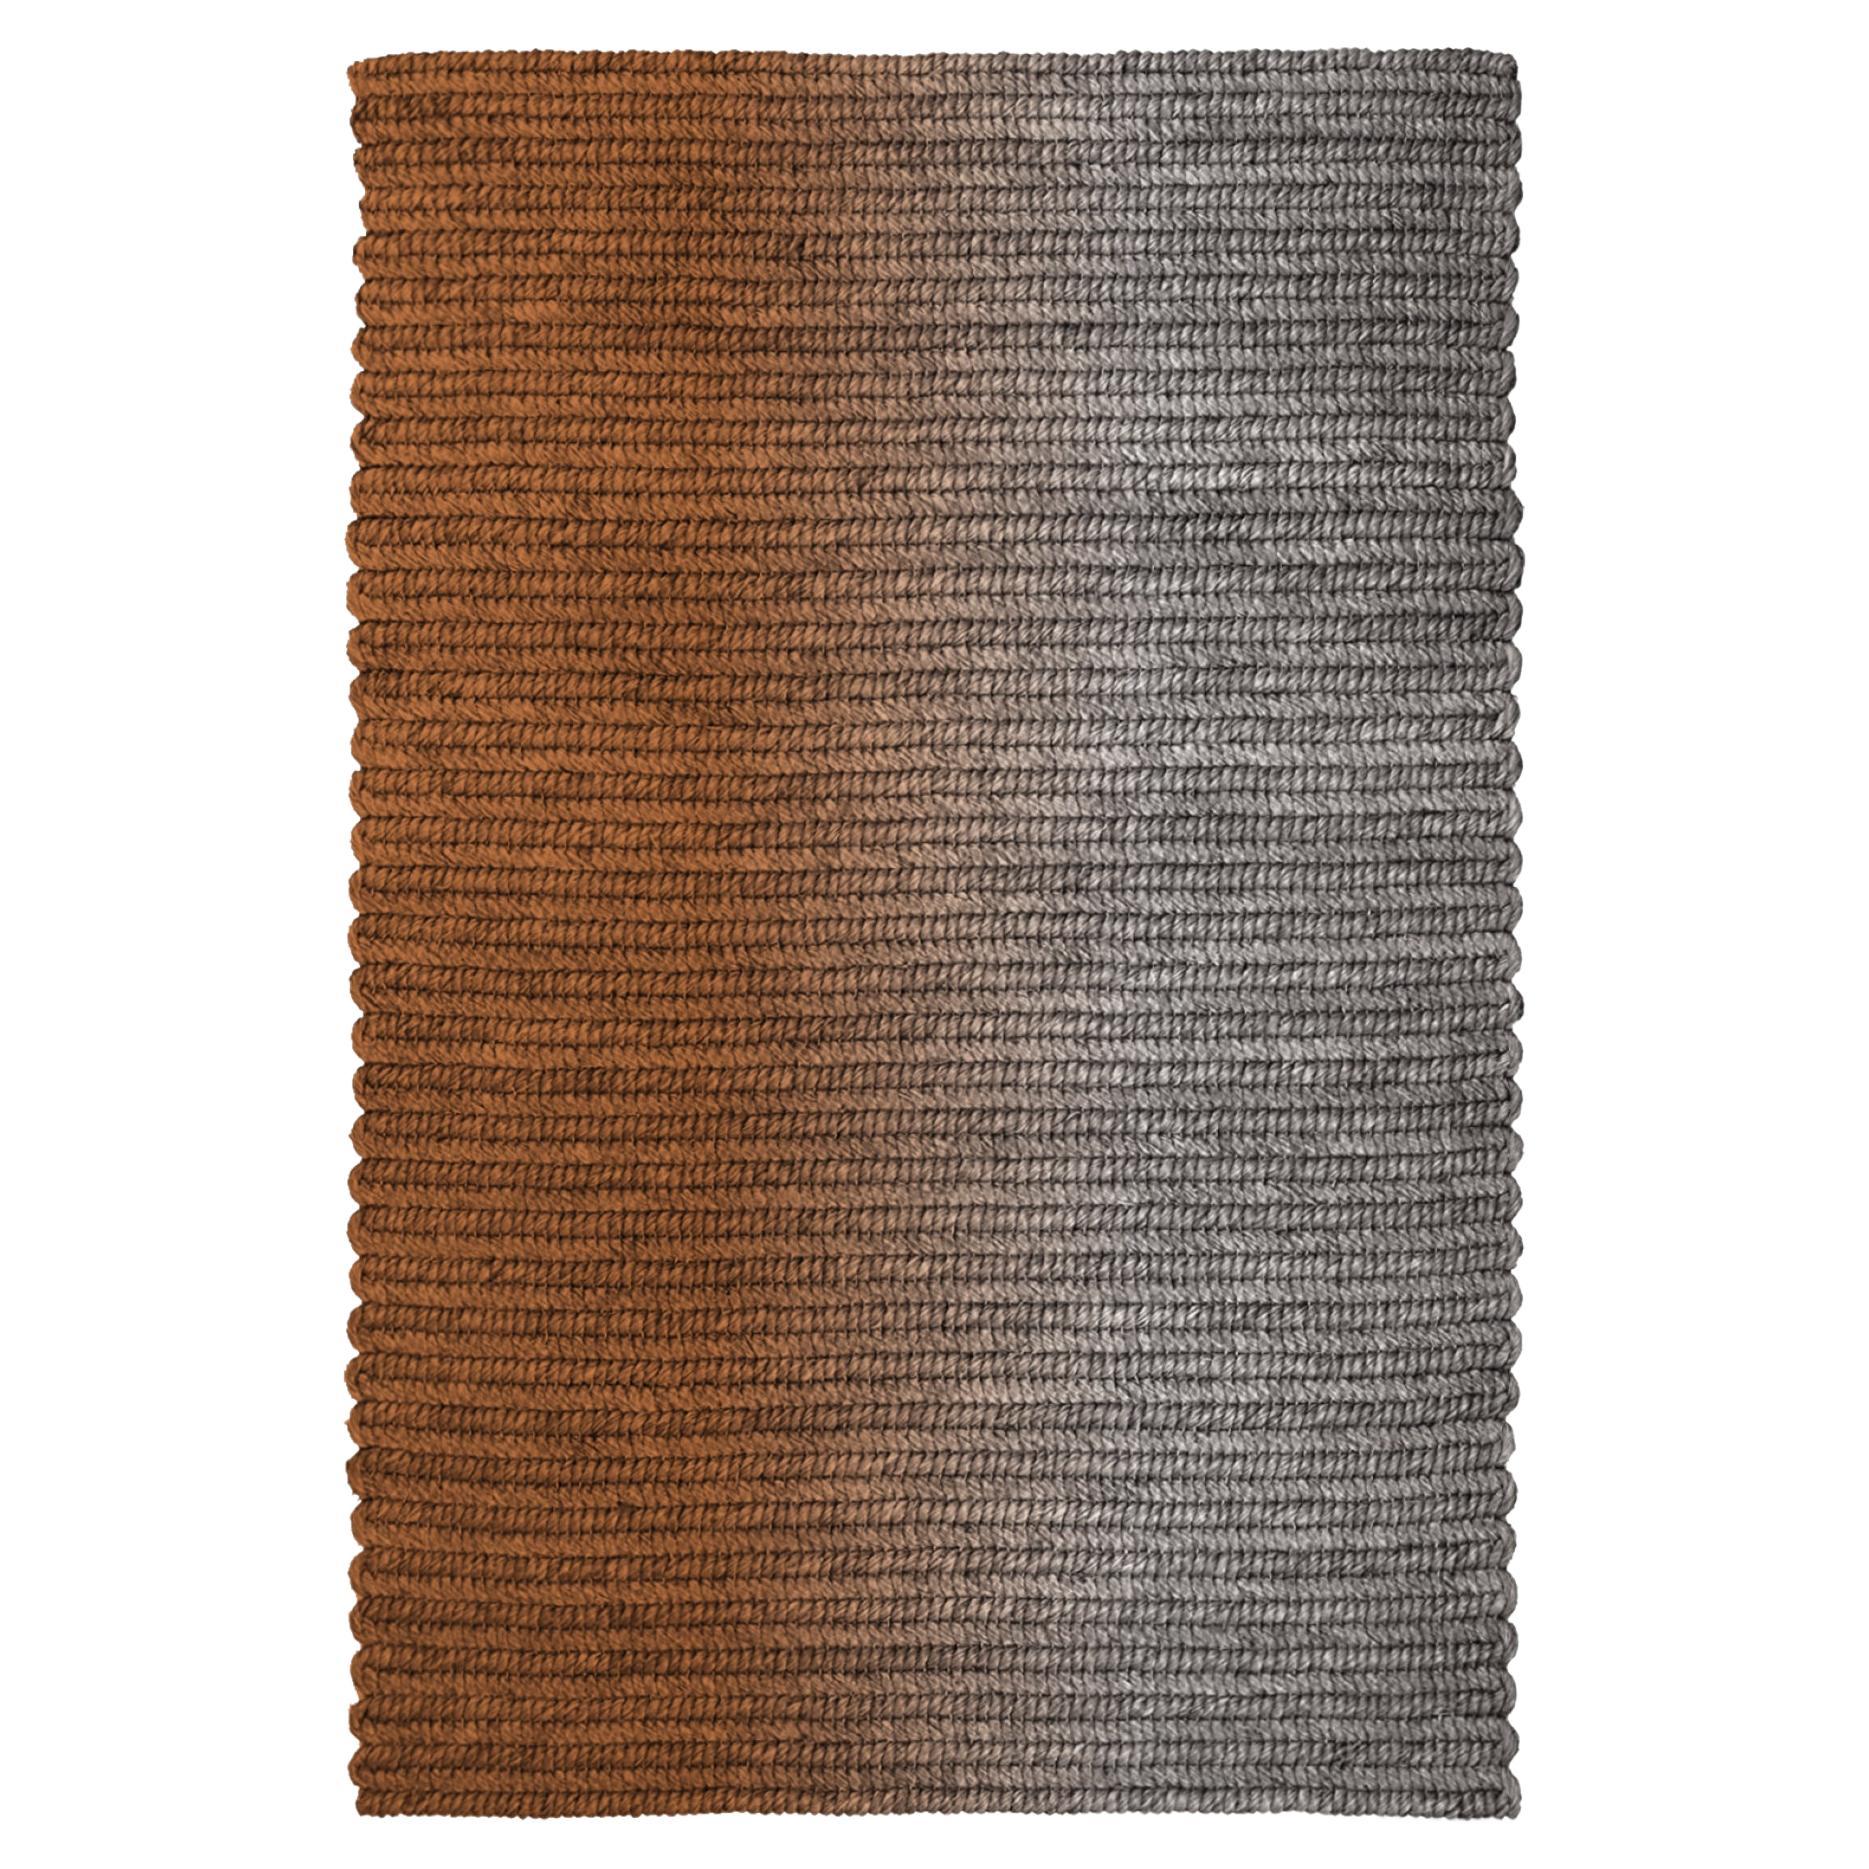 Claire Vos für Musett 'Switch' Abaca Indoor-Teppich aus Mahagoni, 160 x 240 cm